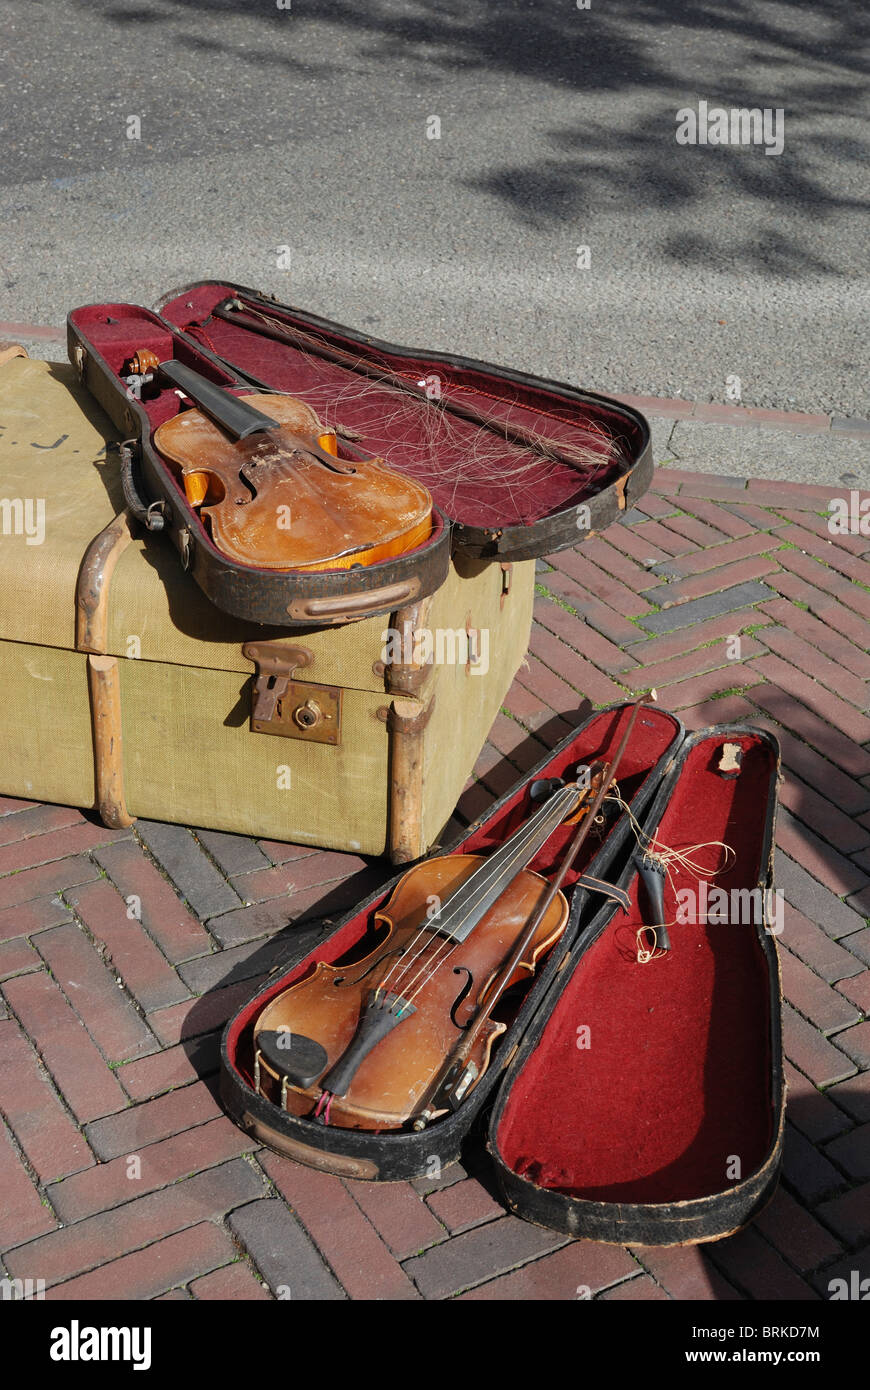 Violines antiguos violin fotografías e imágenes de alta resolución - Alamy